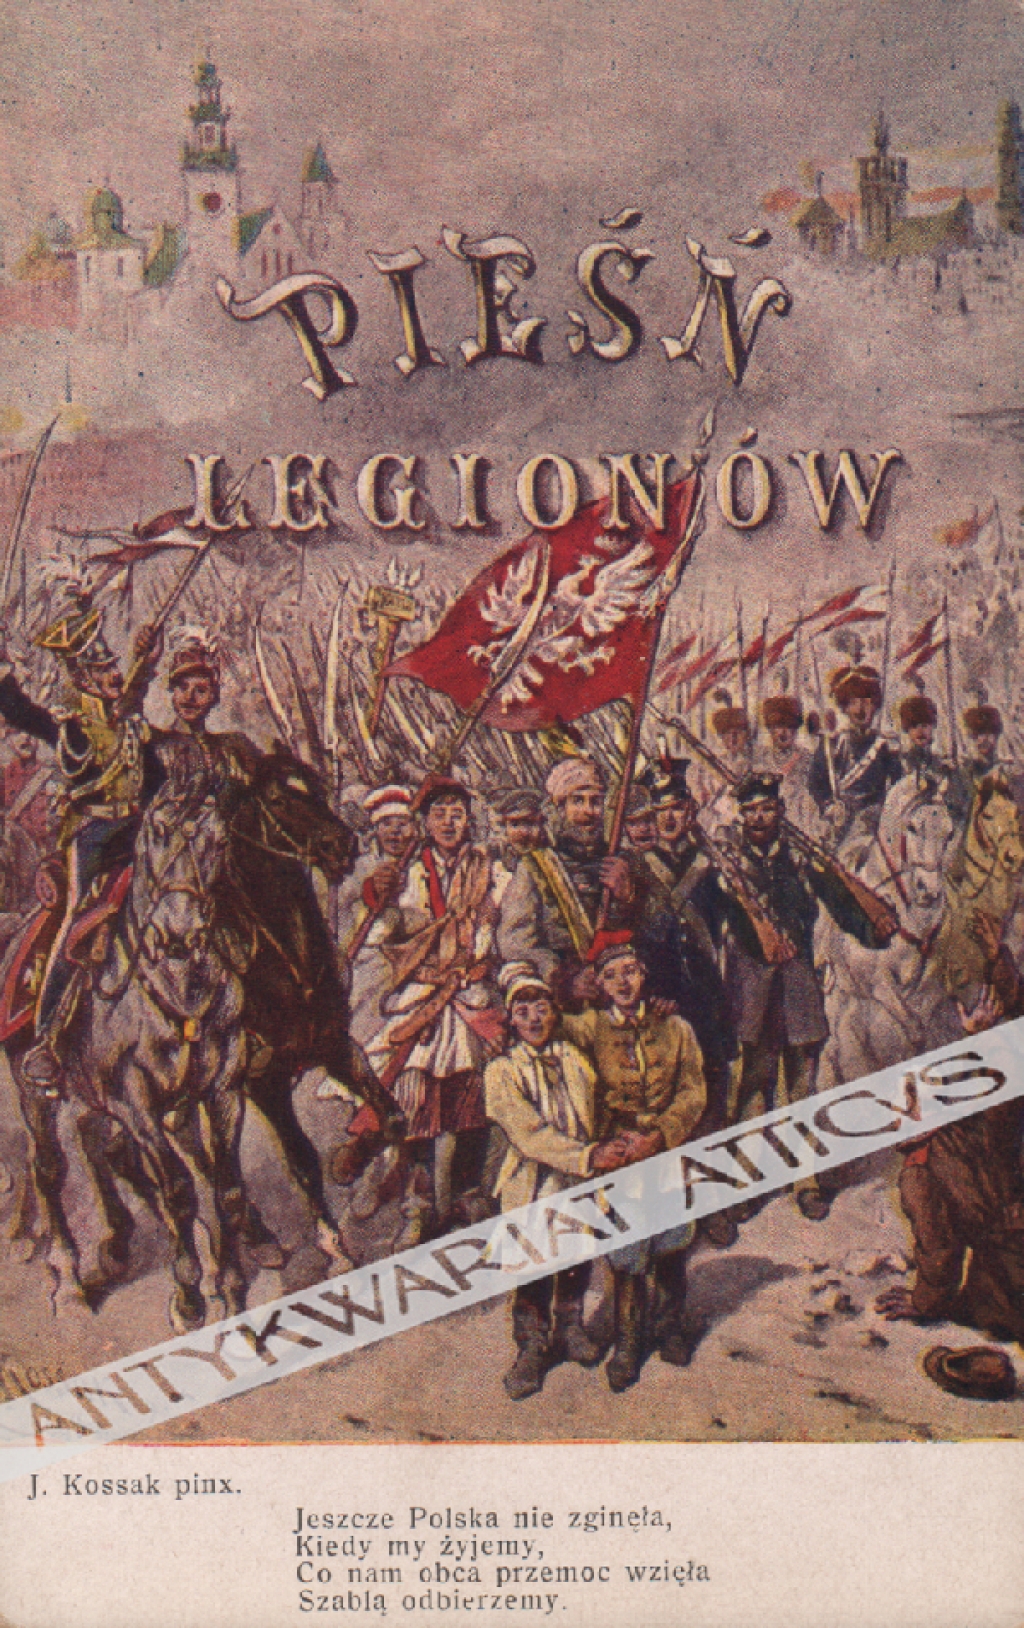 [pocztówka, ok. 1917] Pieśń Legionów. Jeszcze Polska nie zginęła ...Juliusz Kossak pinx.